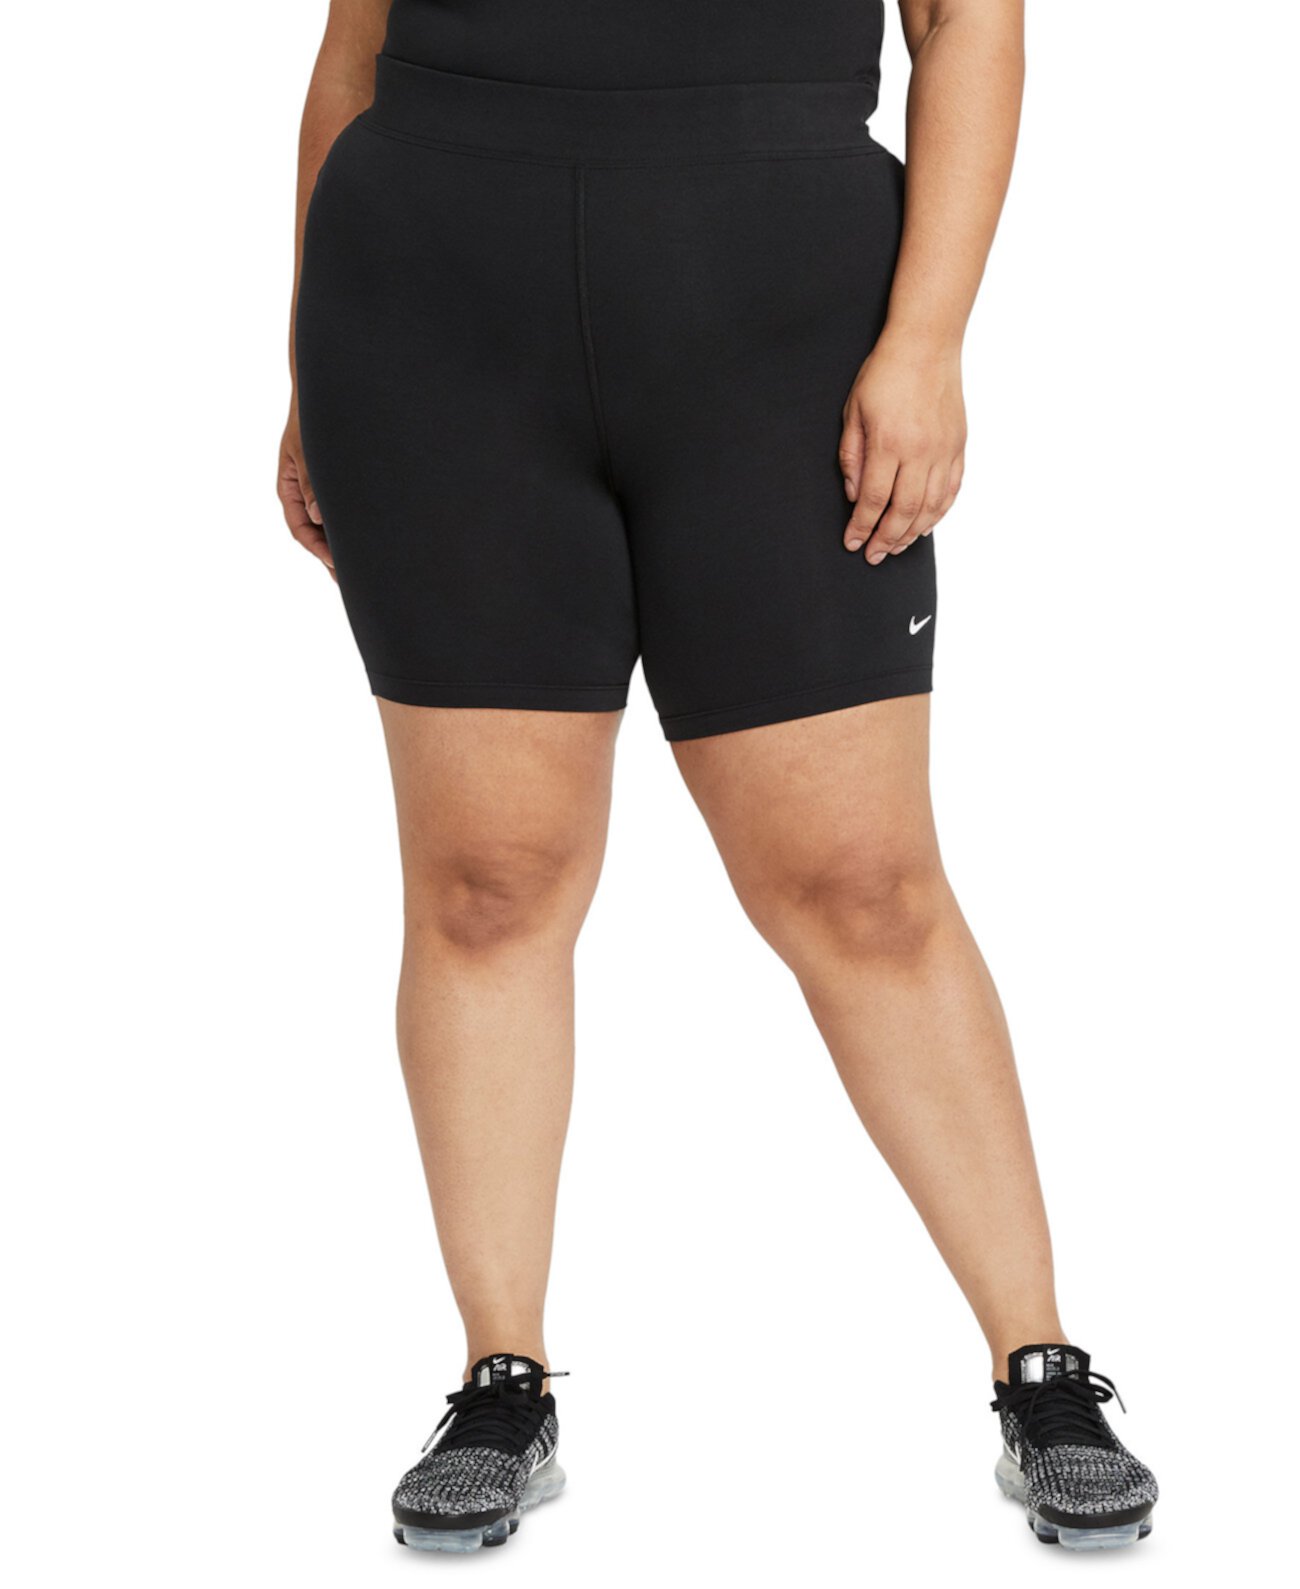 Женские велосипедные шорты Essential со средней посадкой спортивной одежды больших размеров Nike